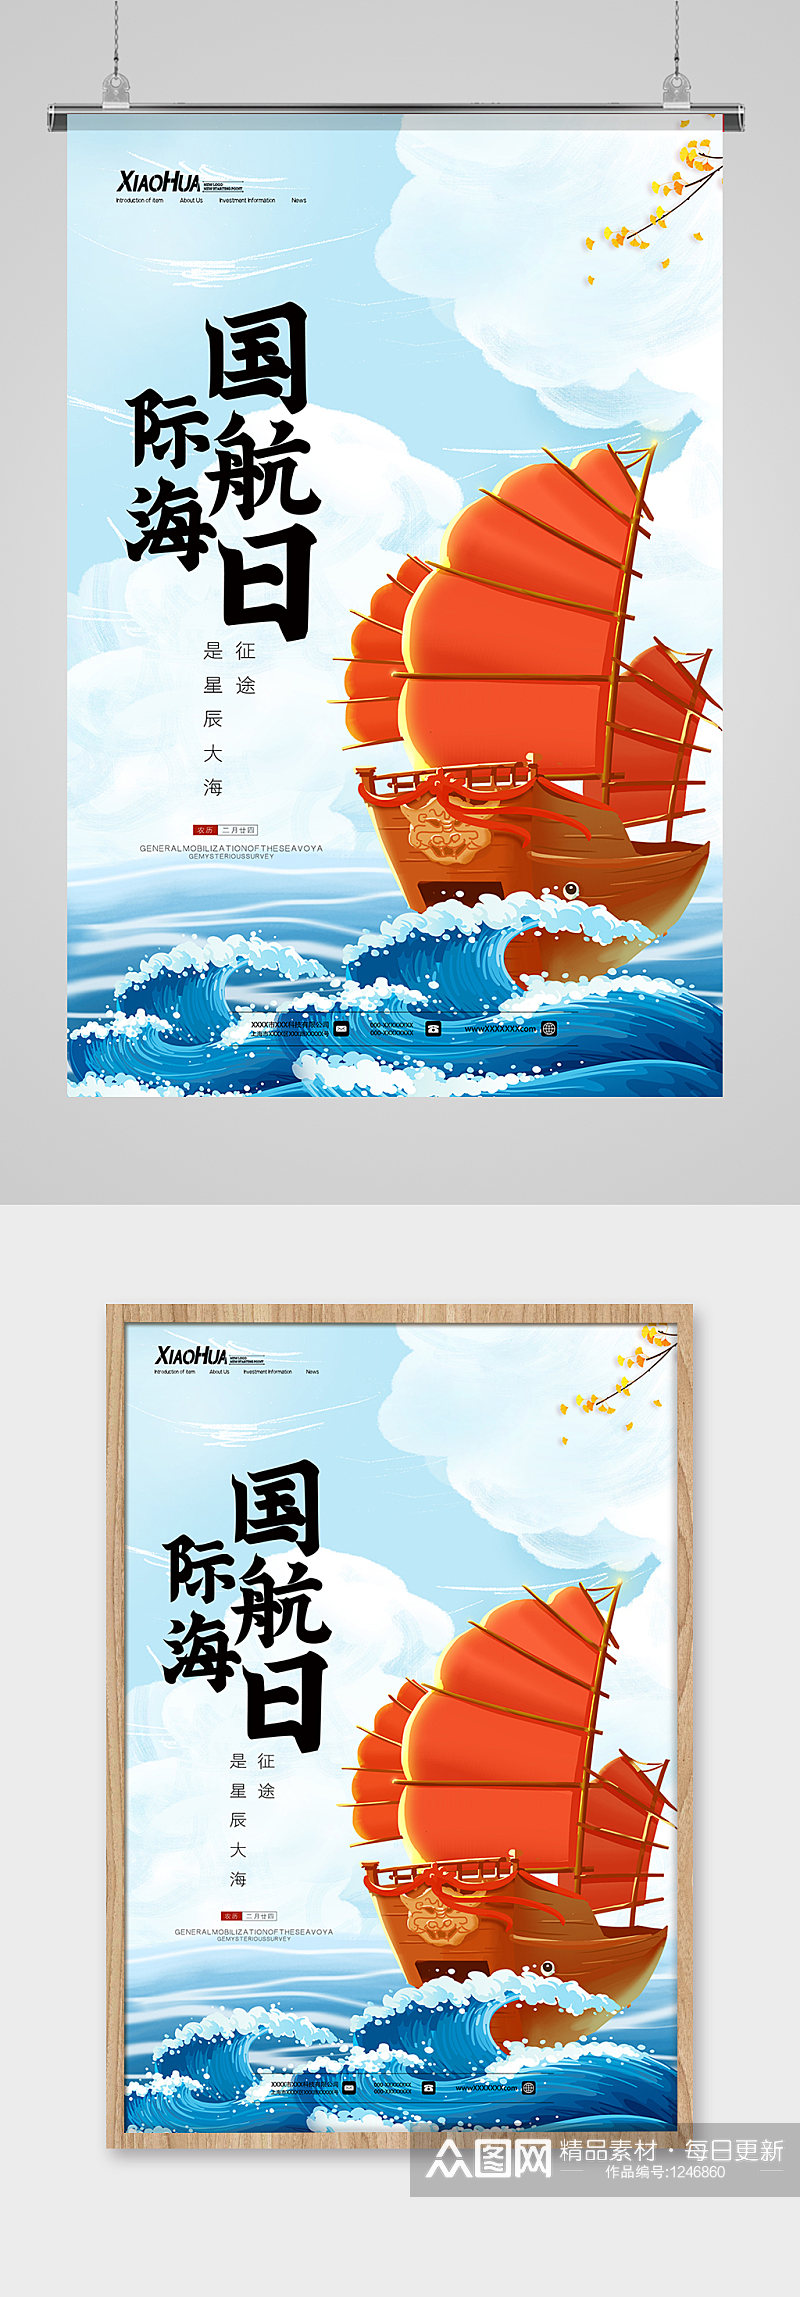 国际航海日海报设计素材